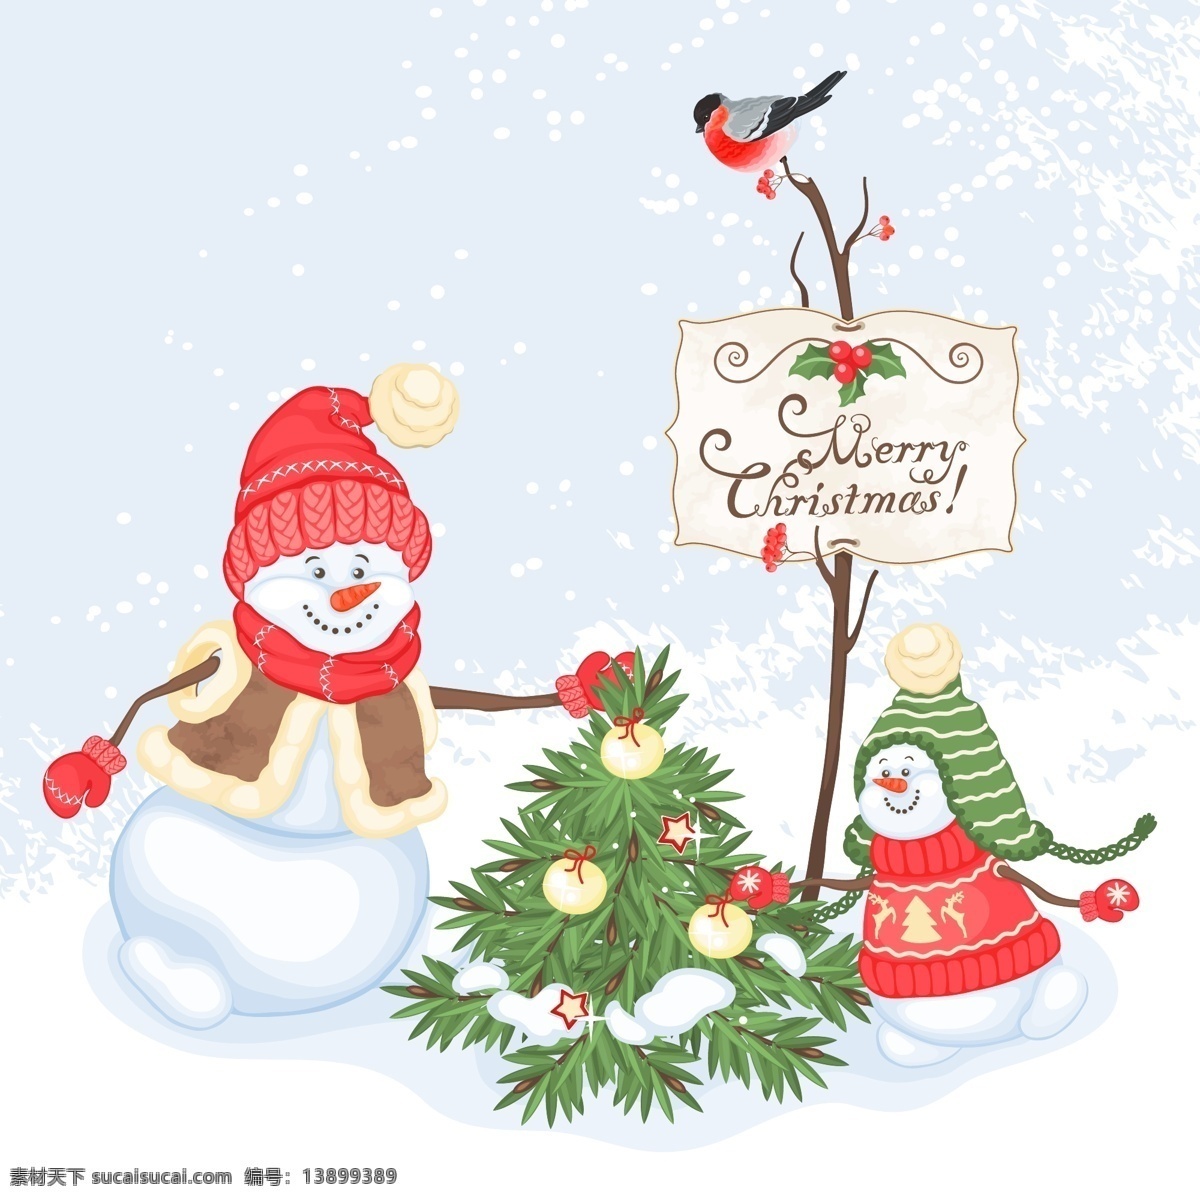 圣诞节 卡通 彩绘 插画 矢量 果实 卡通插画 圣诞树 树枝 小鸟 新年快乐 雪人 圣诞节彩绘 圣诞节祝福 节日素材 其他节日